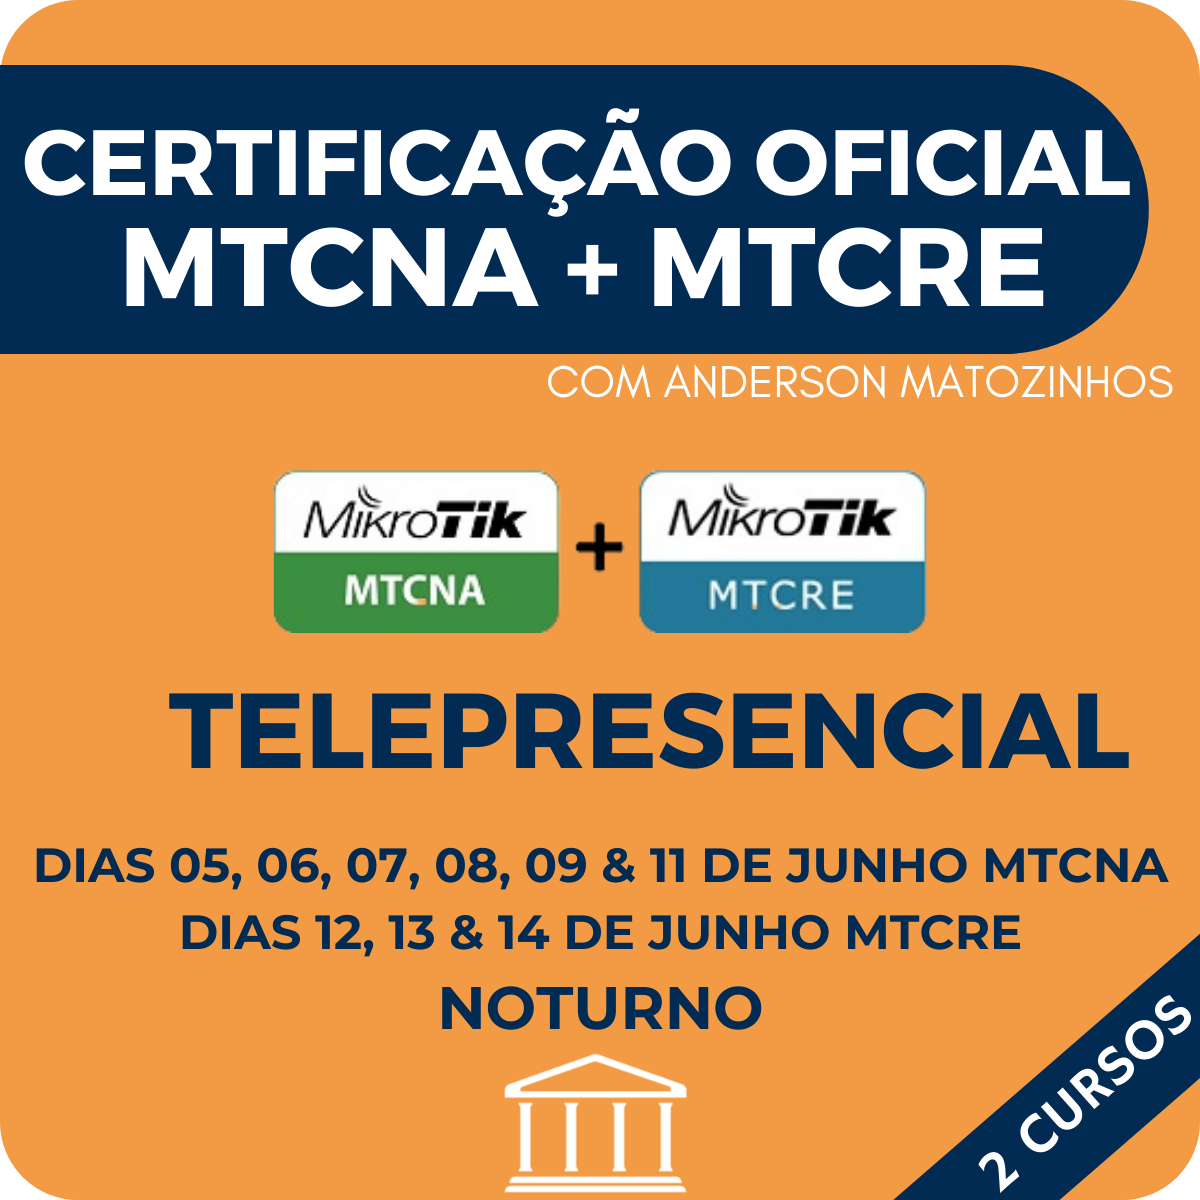 Combo Certificações Oficiais Mikrotik - MTCNA + MTCRE com Anderson Matozinhos - Telepresencial  - Voz e Dados Academy